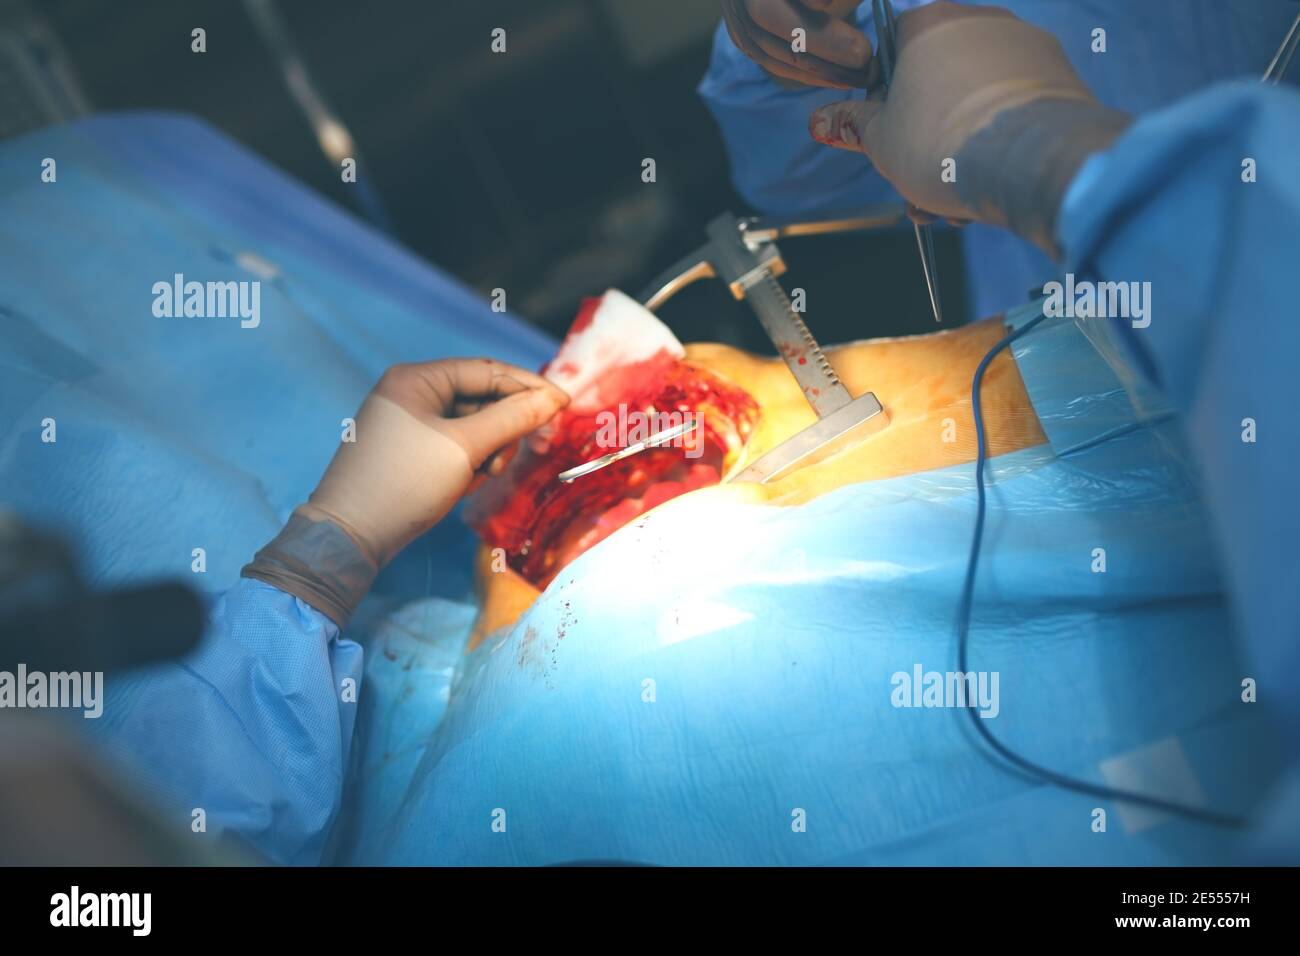 Team von Chirurgen, die einen chirurgischen Eingriff durchführen. Stockfoto